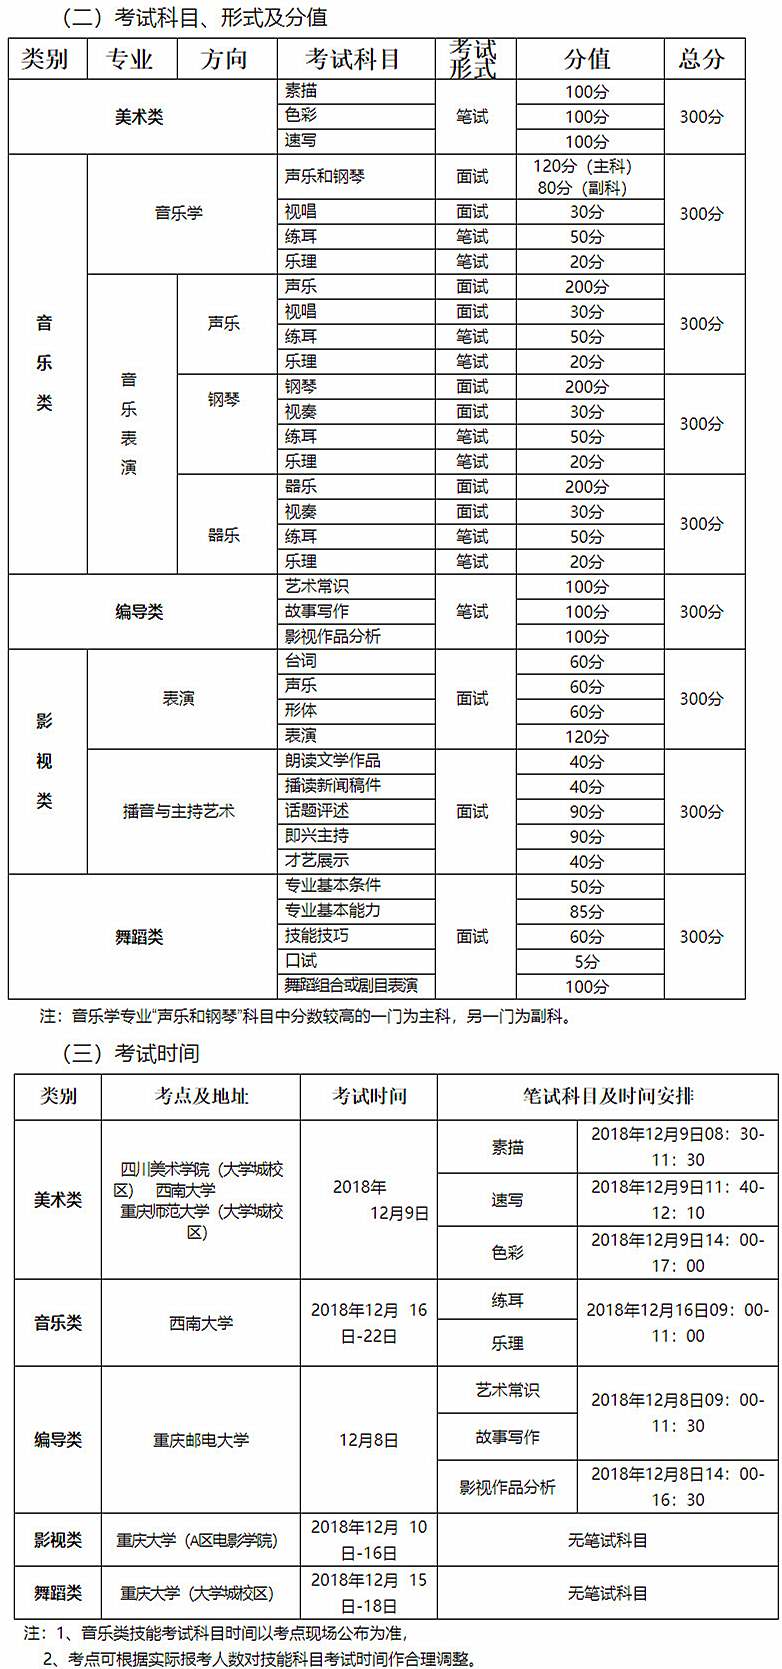 重庆市2019年普通高校艺术类招生专业考试报名须知